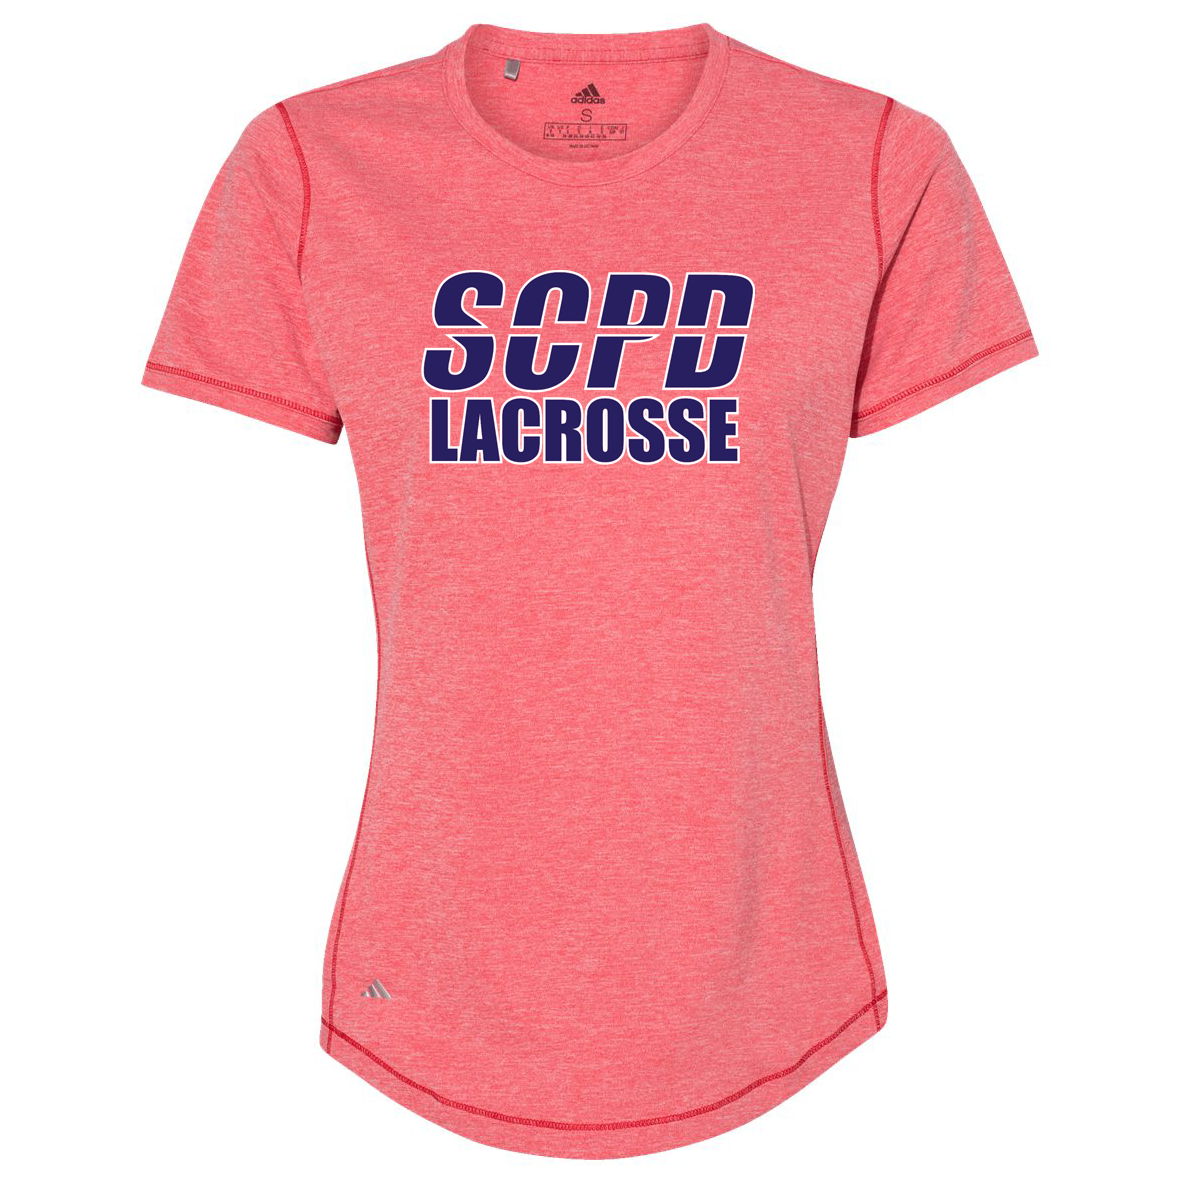 SCPD Lacrosse Women's Adidas Sport T-Shirt